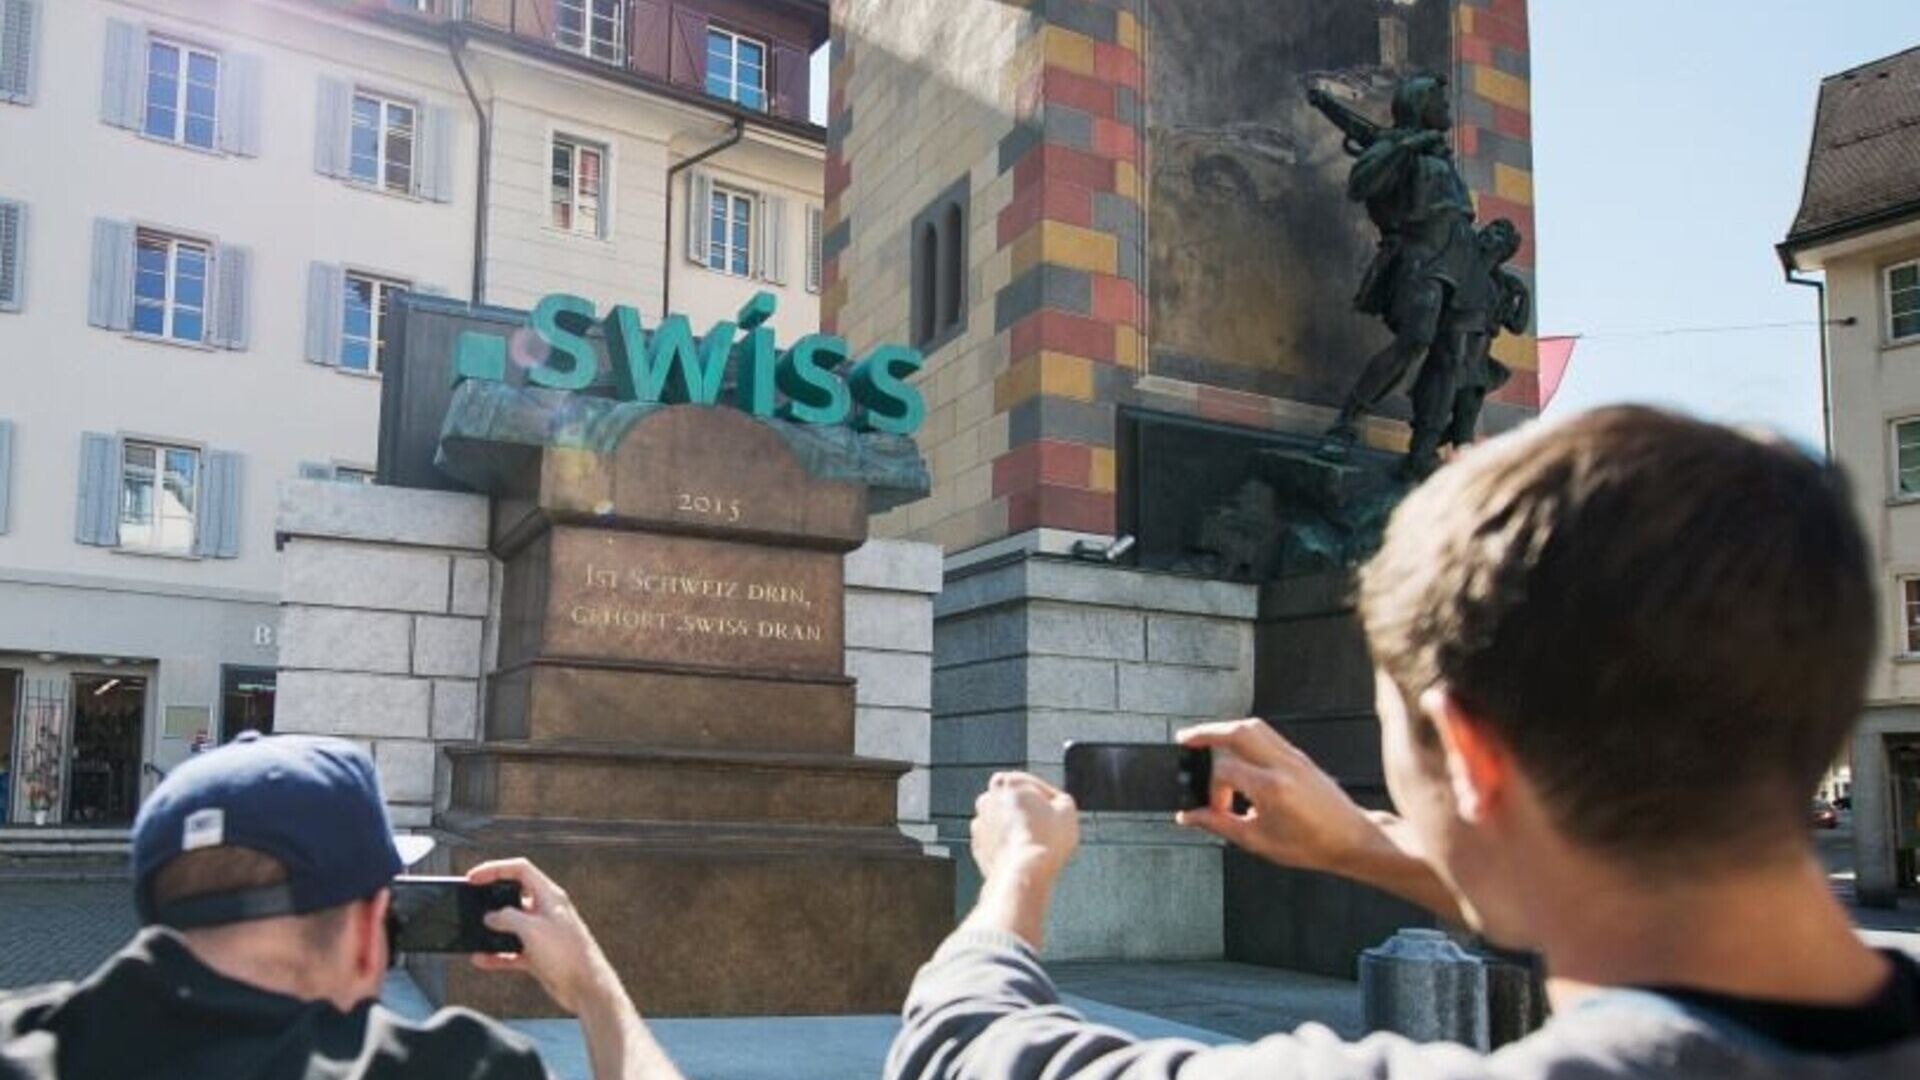 .swiss: il TLD “.swiss” della Svizzera rappresentato accanto a Guglielmo Tell nel centro storico di Altdorf